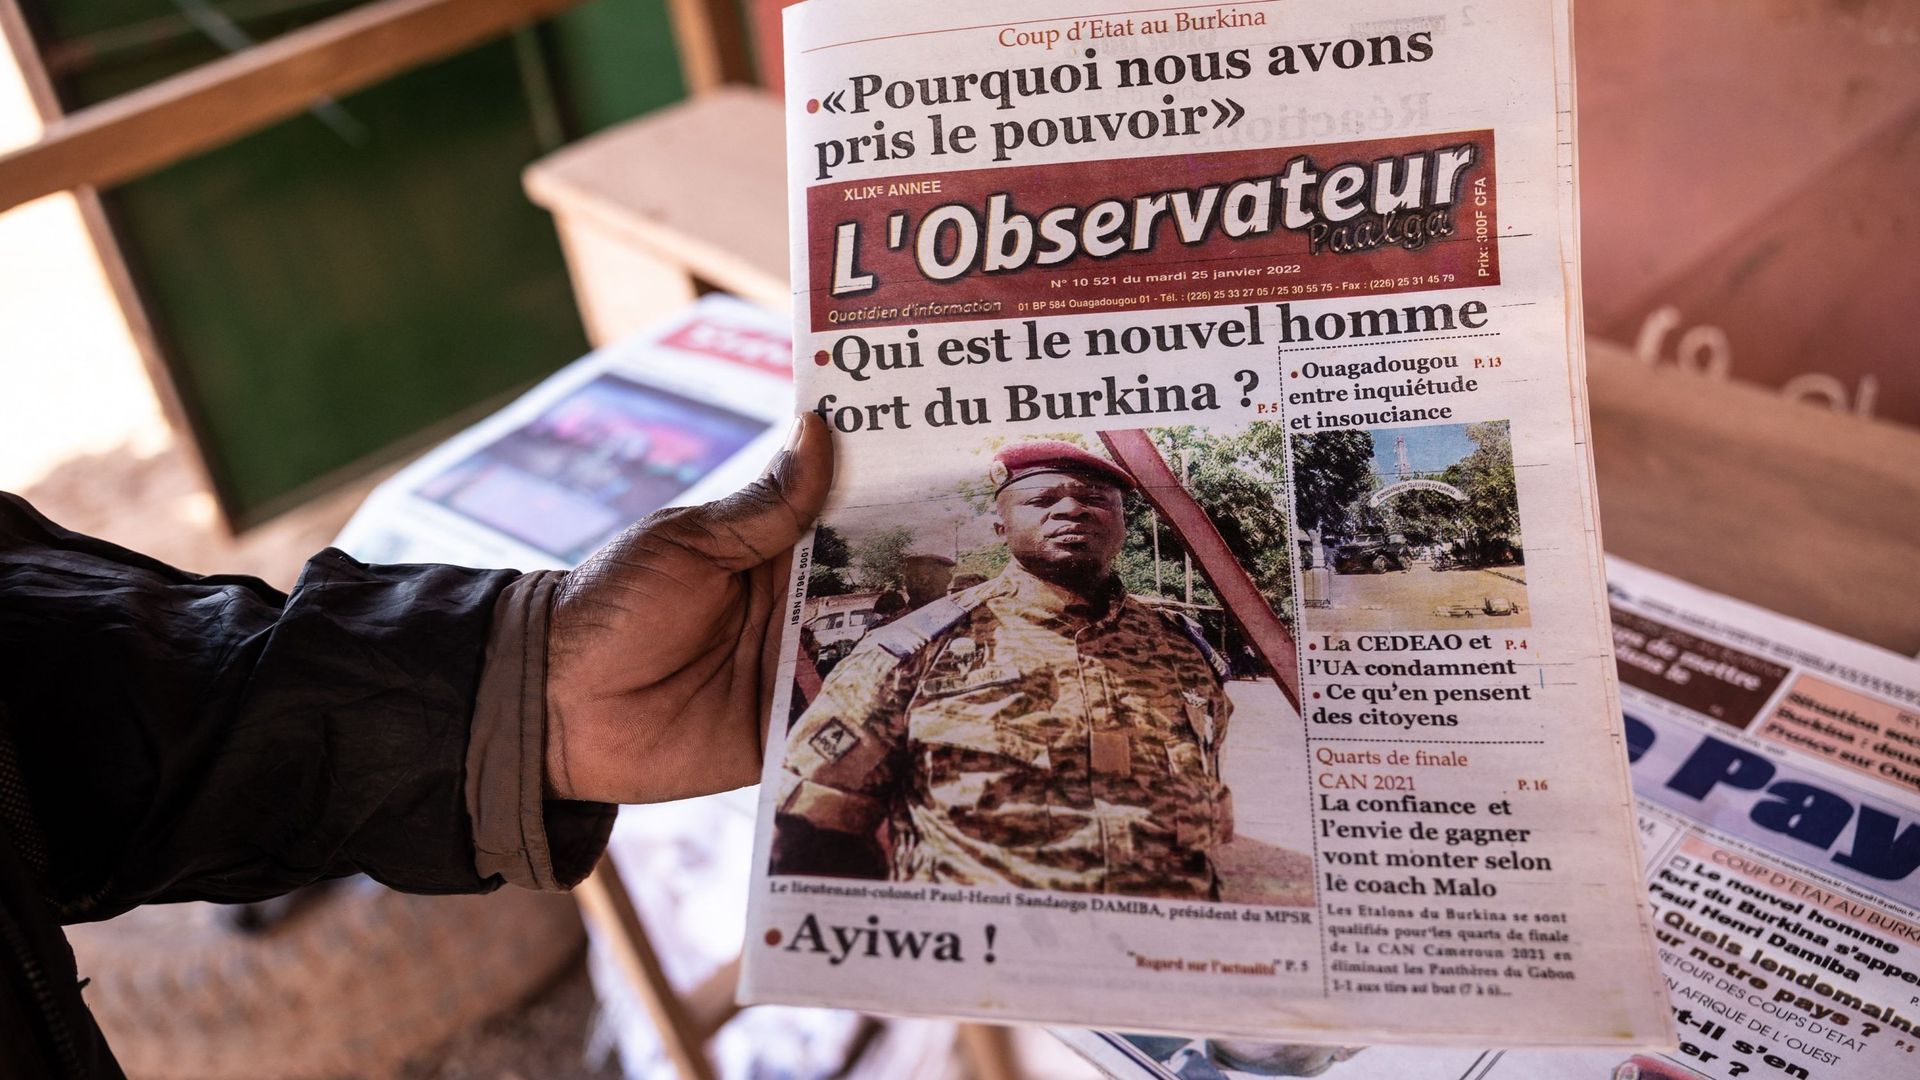 Le Burkina Faso a "plus que jamais besoin de ses partenaires", déclare le chef de la junte